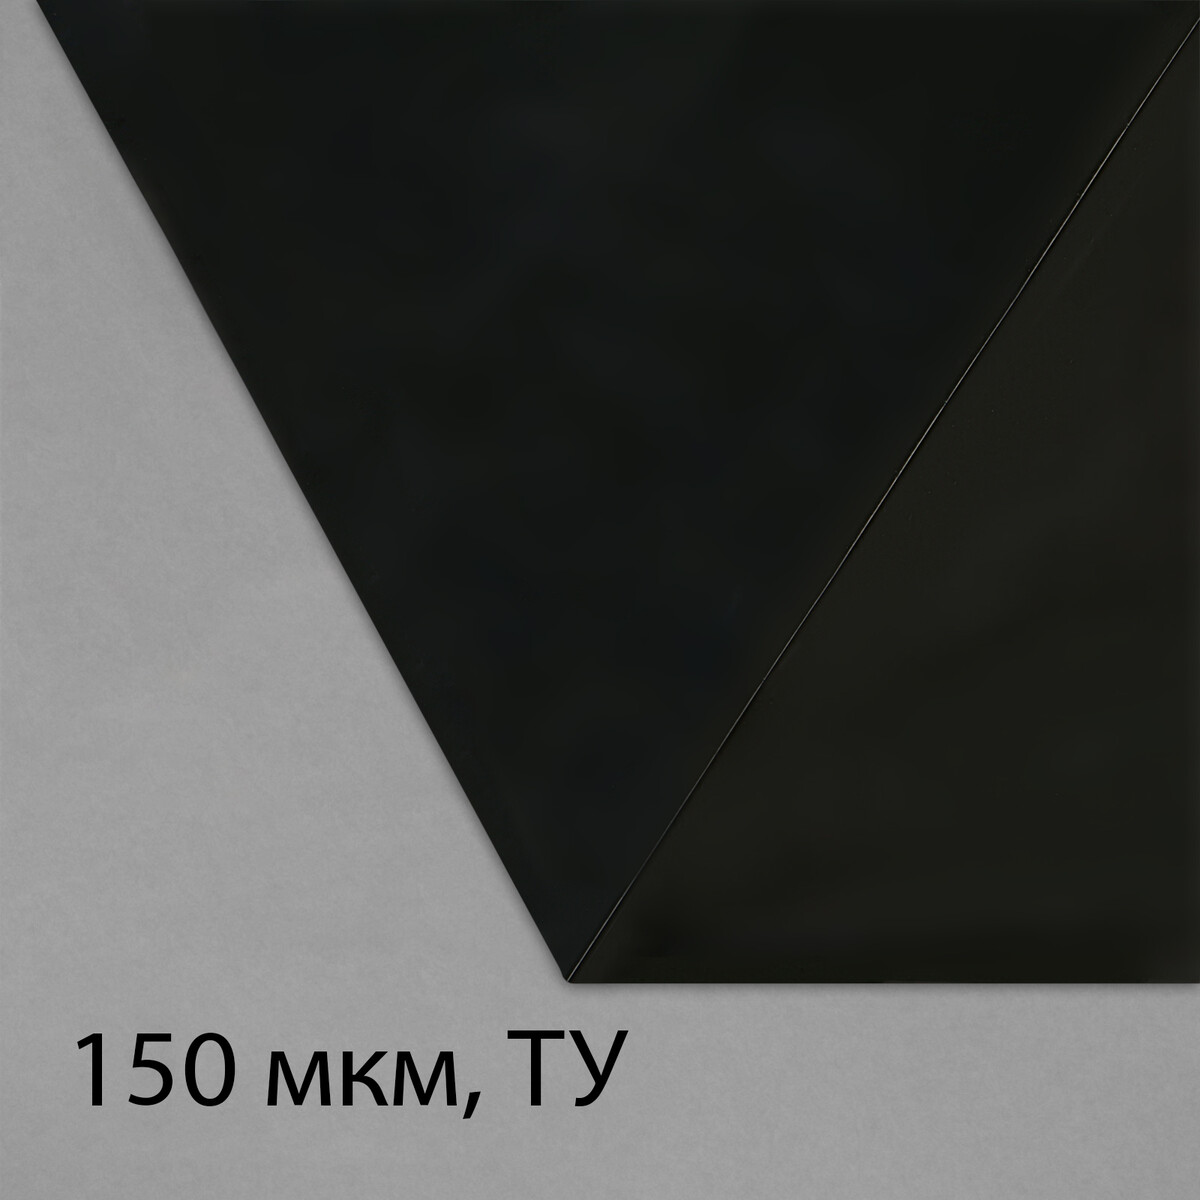 Пленка из полиэтилена, техническая, толщина 150 мкм, черная, 5 × 3 м, рукав (1.5 м × 2), эконом 50%, для дома и сада пленка полиэтиленовая техническая 100 мкм черная длина 10 м ширина 3 м рукав 1 5 м × 2 эконом 50%